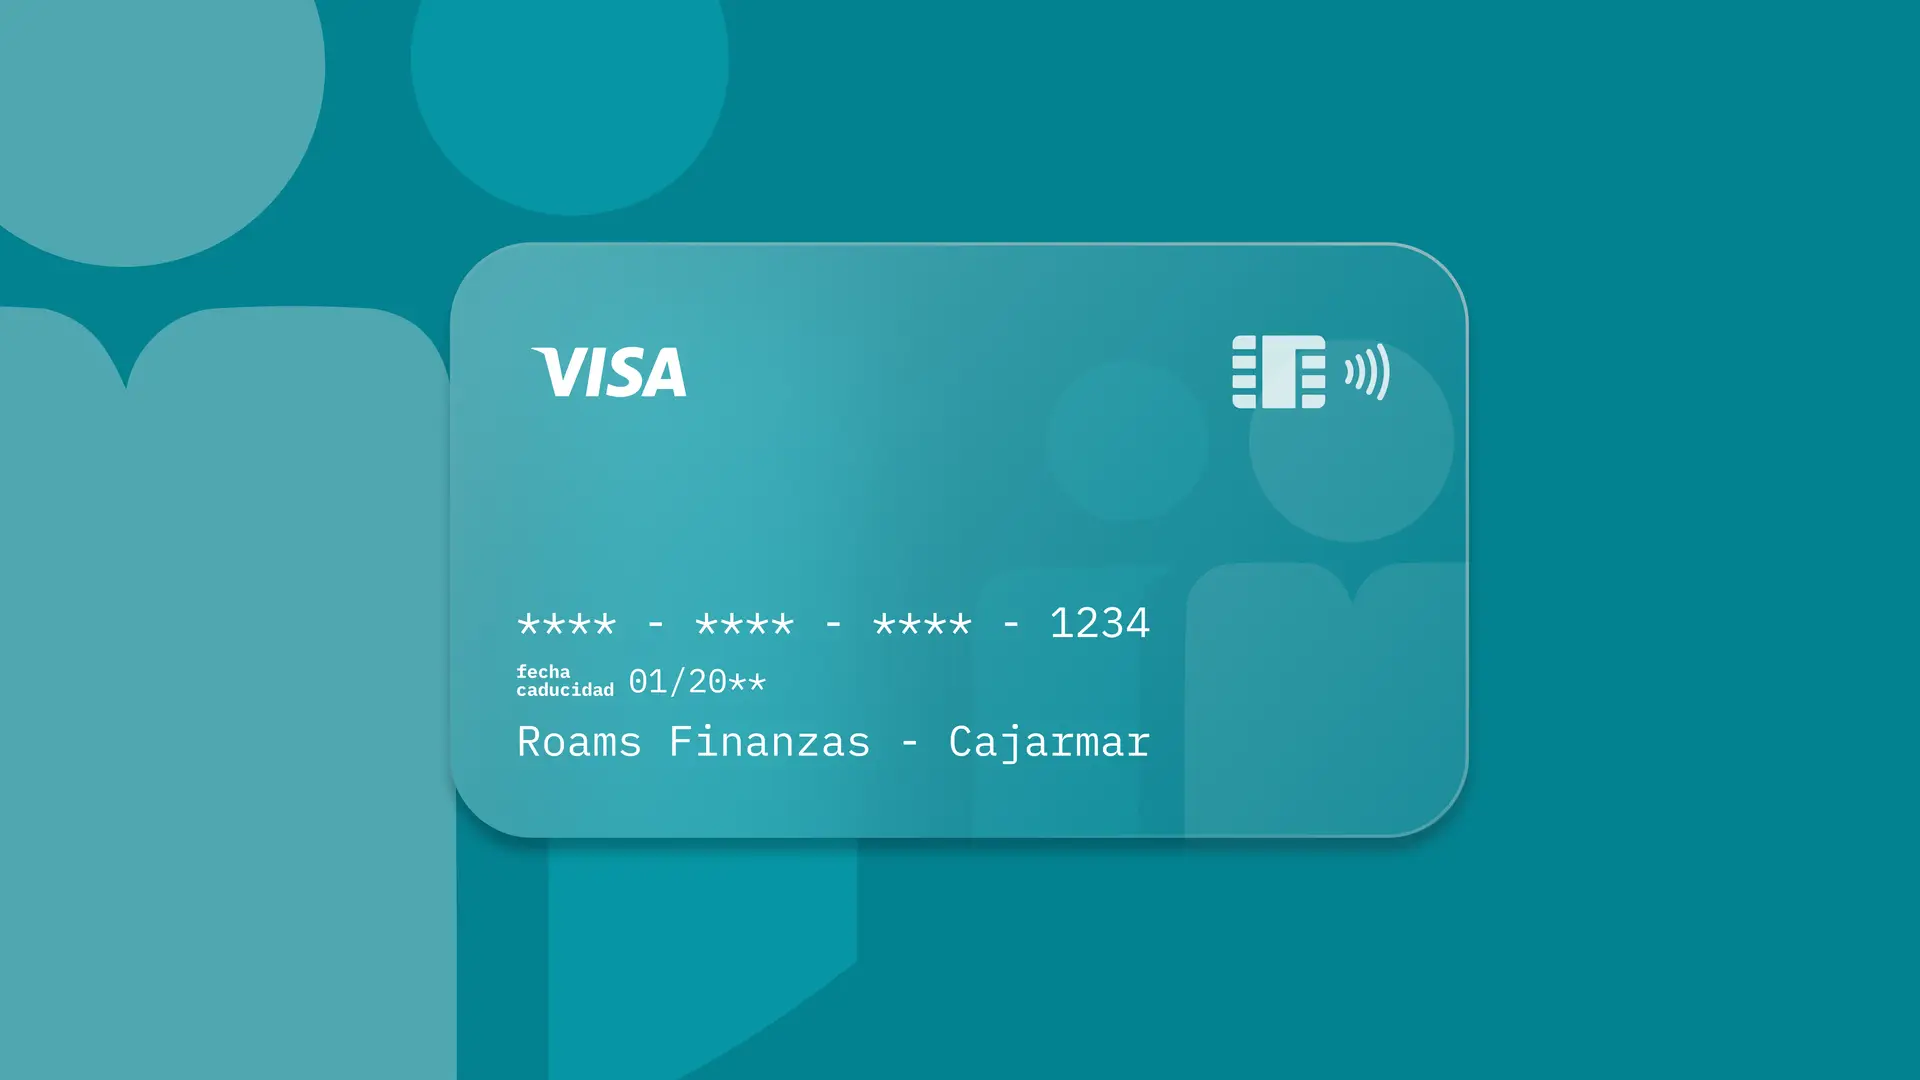 Simulación de una tarjeta de la entidad financiera Cajamar creada por Roams.